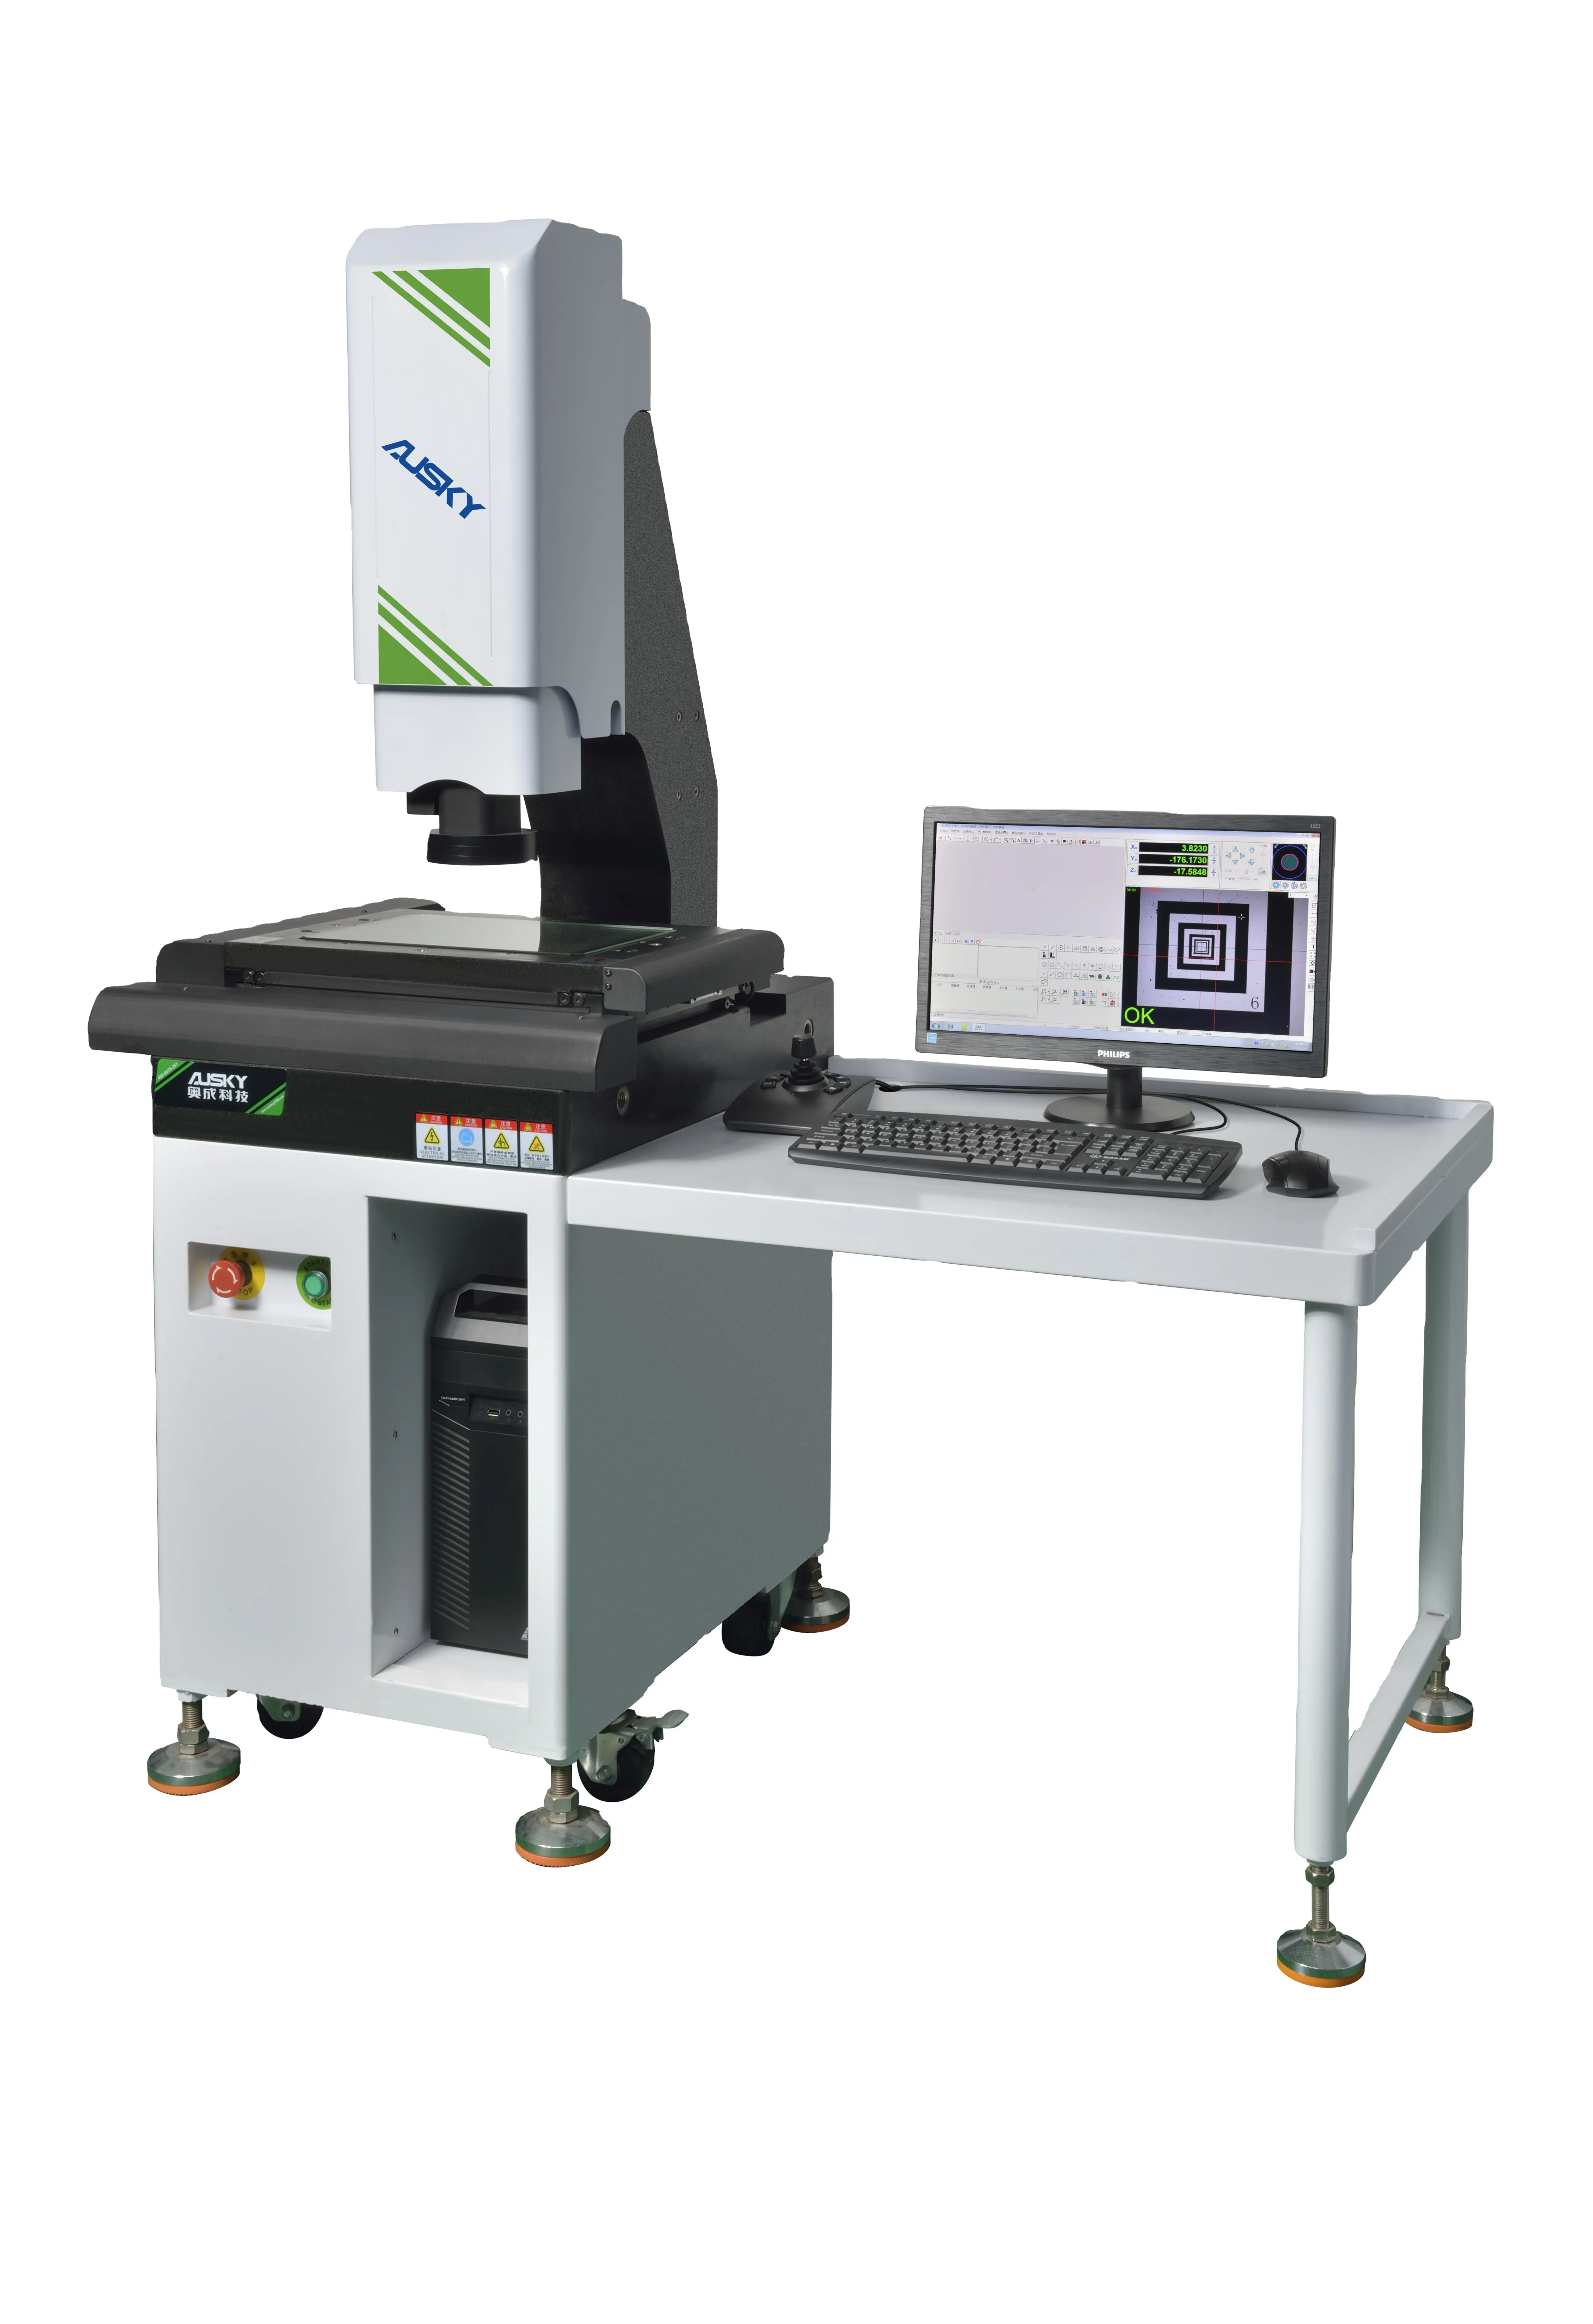 Fabrika doğrudan fiyat AMQ320 CNC otomatik görüntü ölçüm cihazı CNC optik ölçüm Video ölçüm aleti